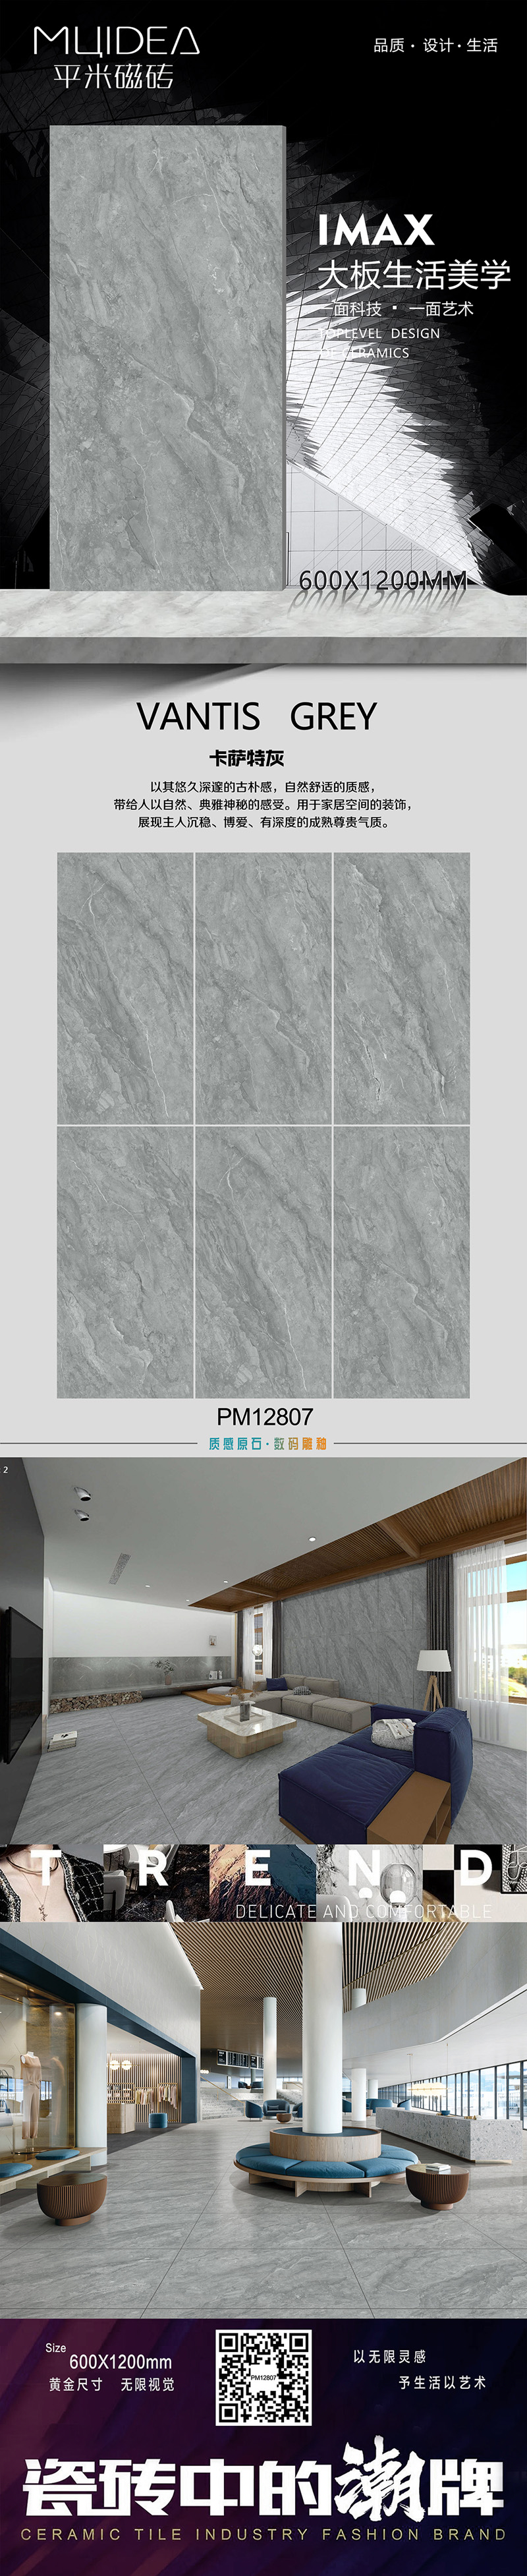 平米排版  PM12807--仿古面++.jpg